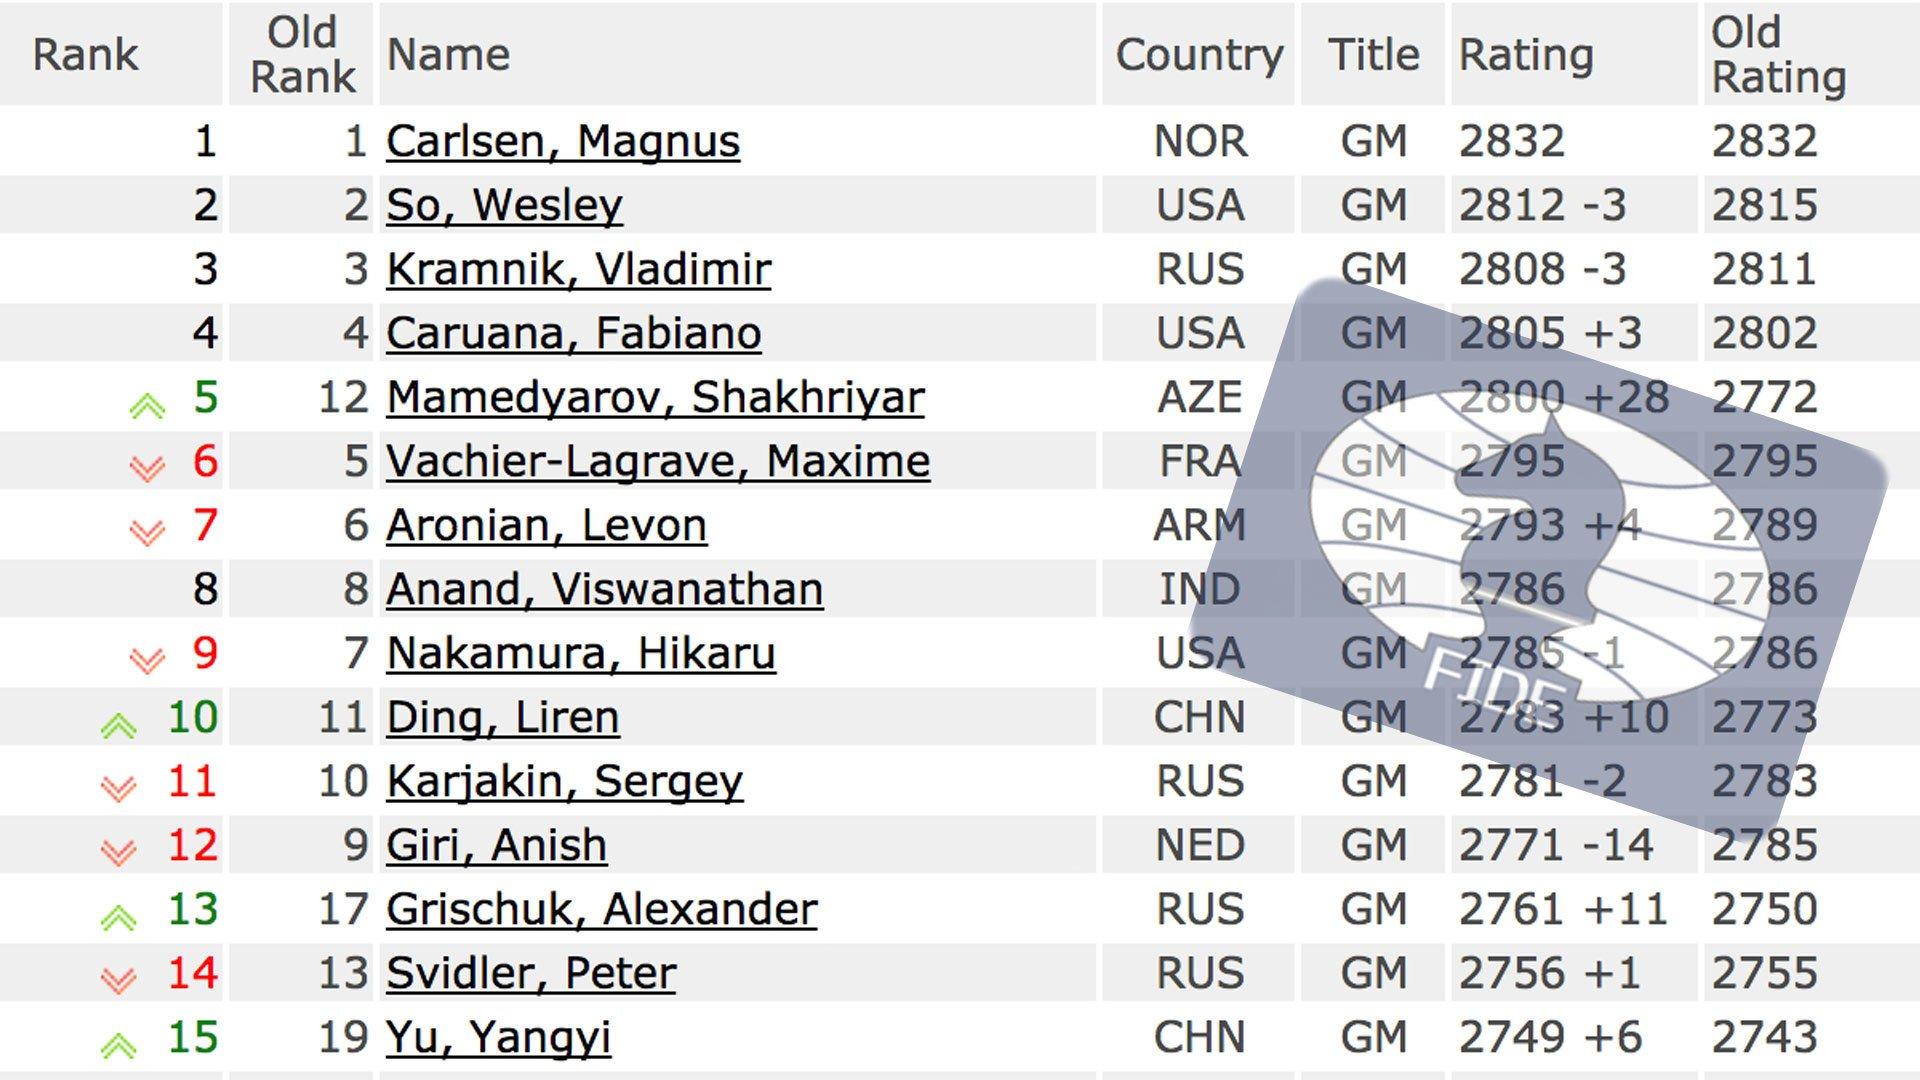 Mamedyarov World #5 In June FIDE Ratings 